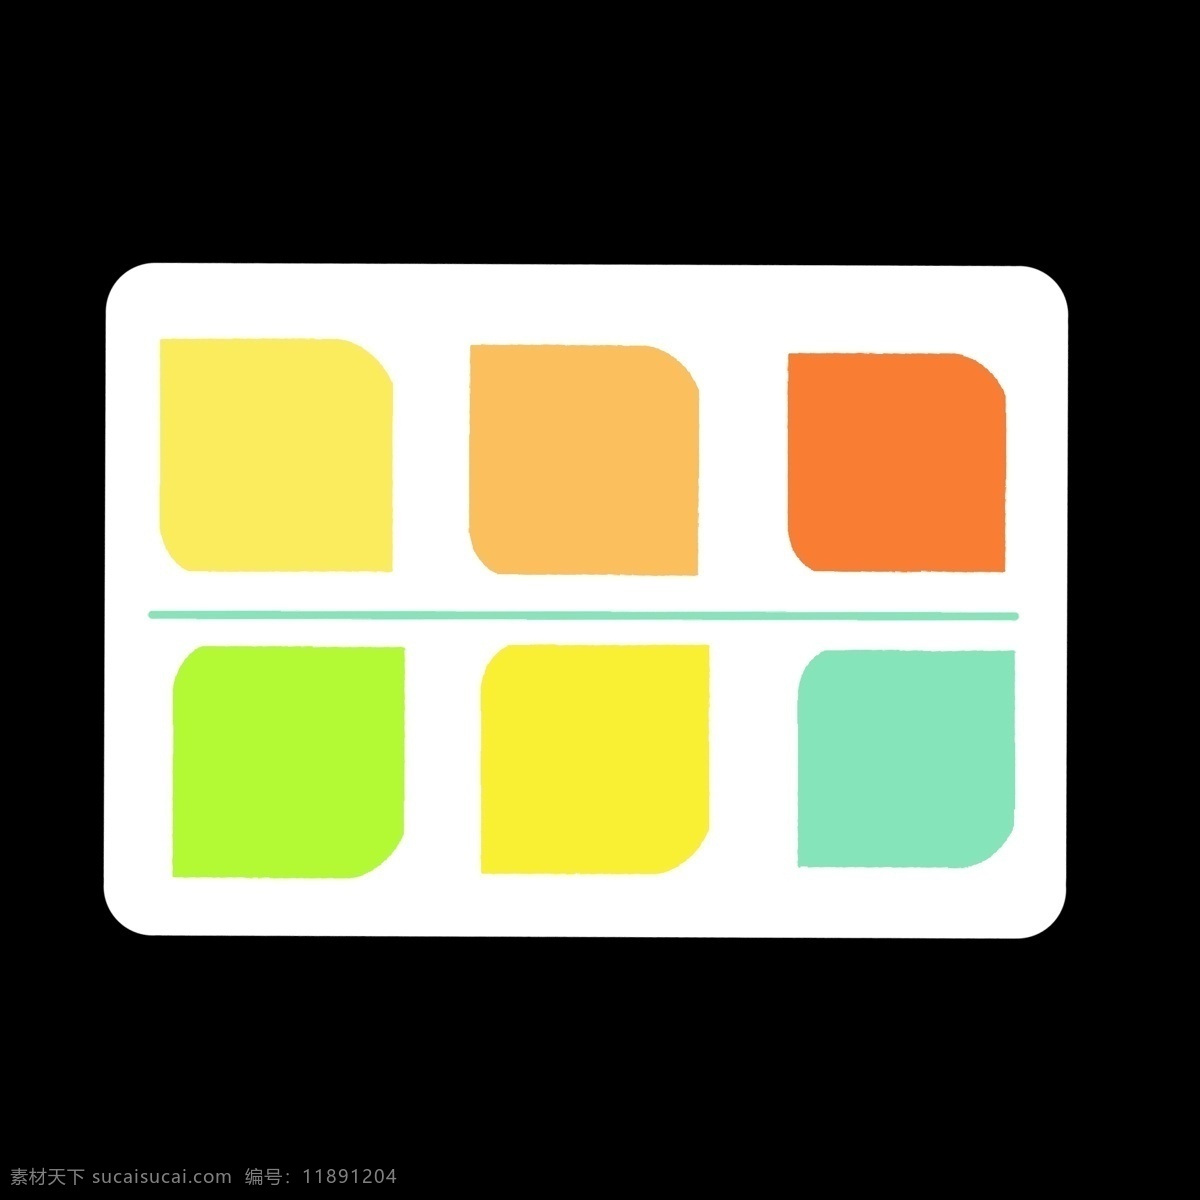 暖色调 方块 分类 图标 暖色 分类表 分解 分化 分开 ppt专用 卡通 简约 简洁 简单 五颜六色